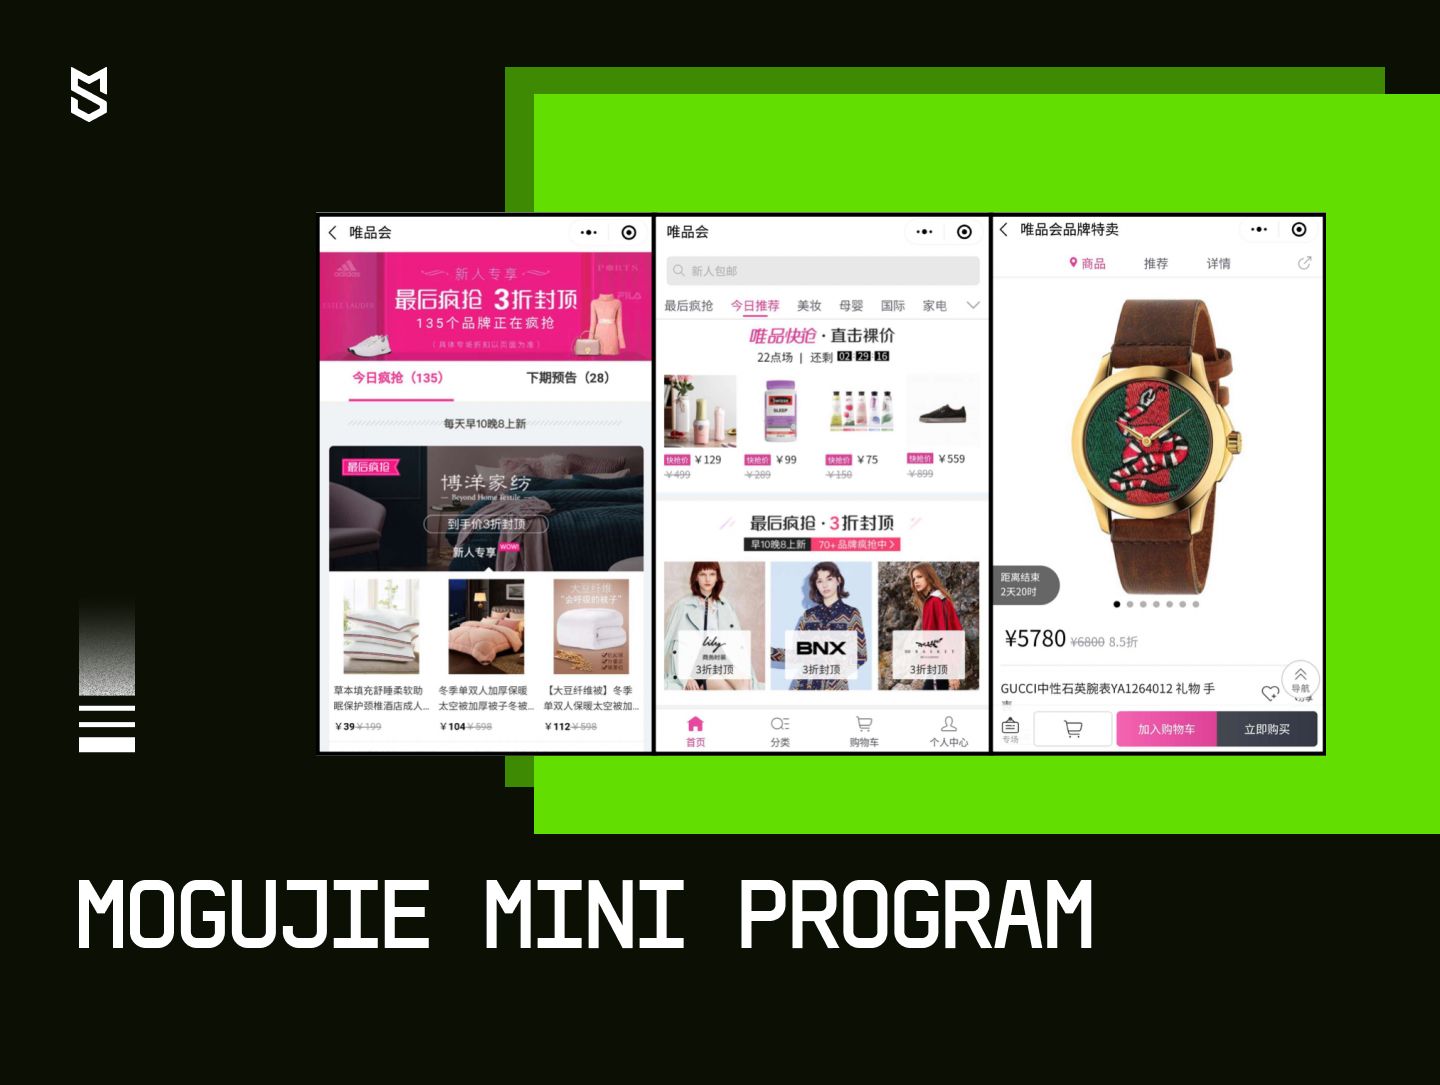 Mogujie Mini Program 
Screenshots